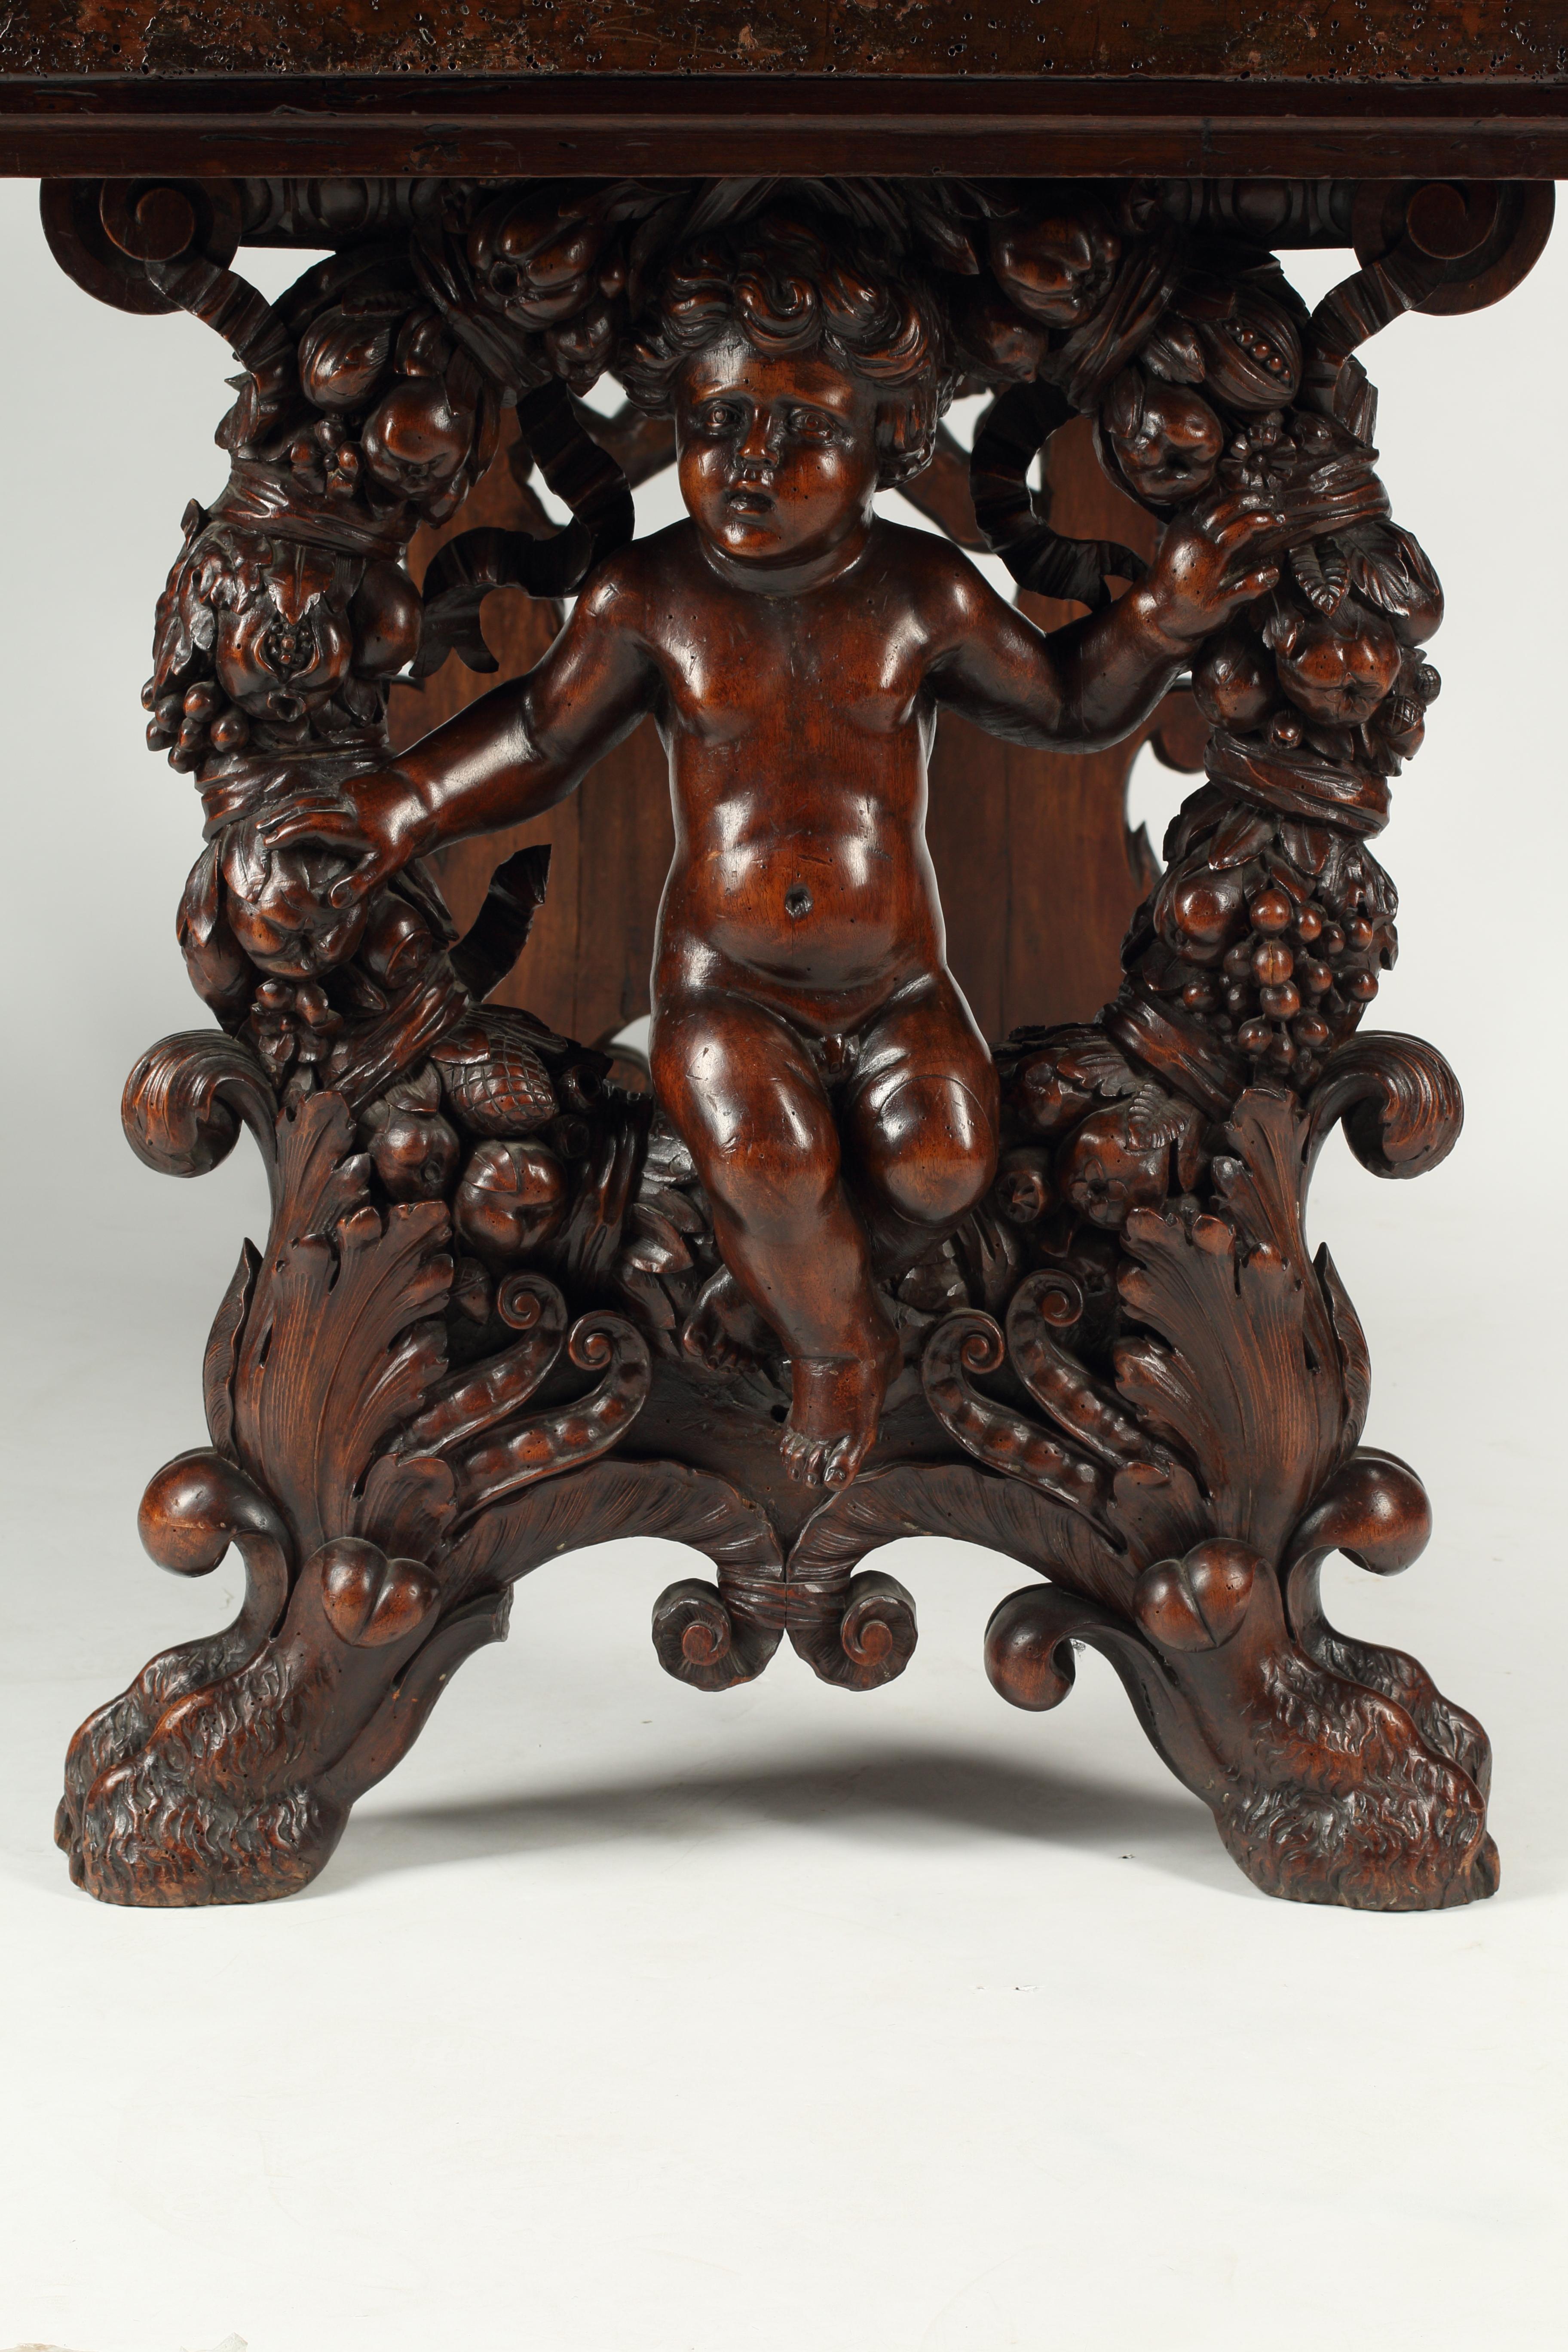 Impressionnante table à tréteaux en noyer finement sculpté de la fin du XVIIIe siècle ou du début du XIXe siècle, avec des puttis inhabituellement sculptés sur les côtés.
La sculpture fait l'objet d'une attention méticuleuse, elle est robuste et